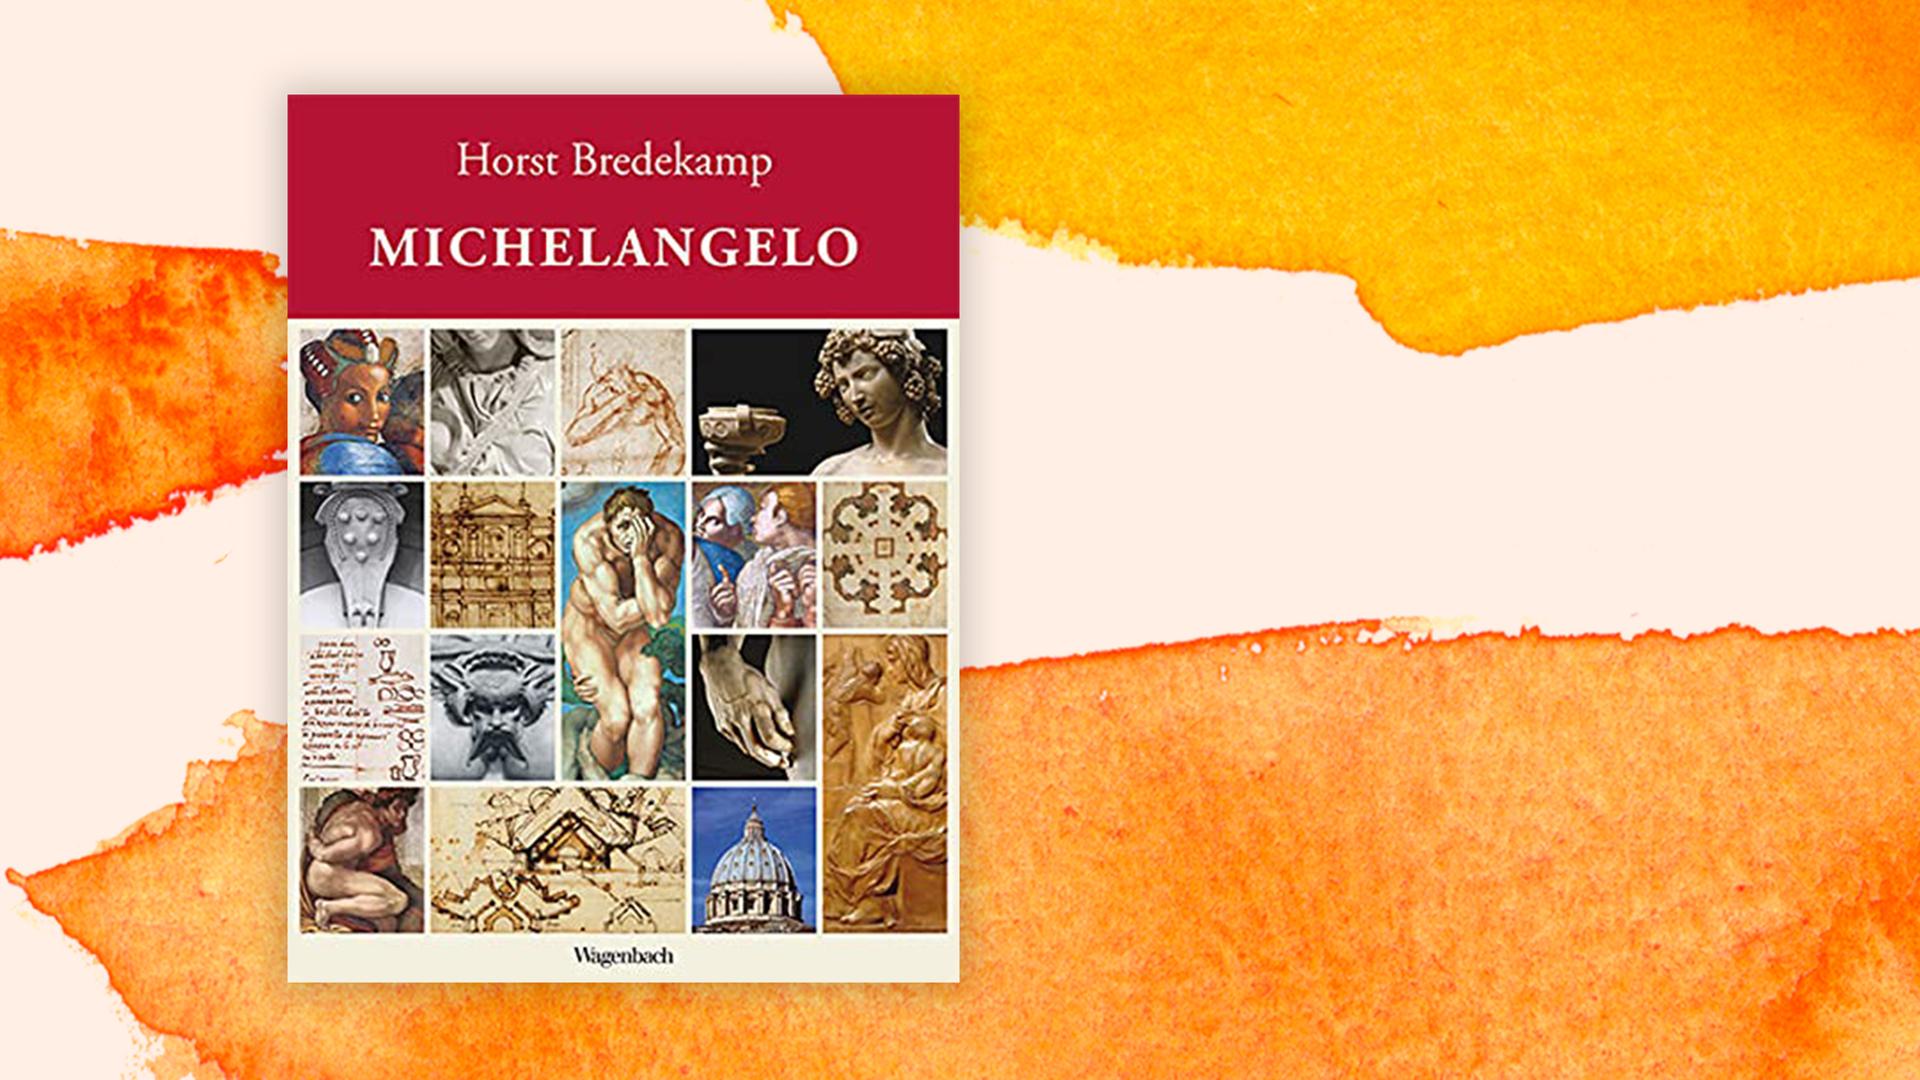 Das Buchcover von Horst Bredekamps Sachbuch " Michelangelo" auf pastell farbenen Hintergrund.